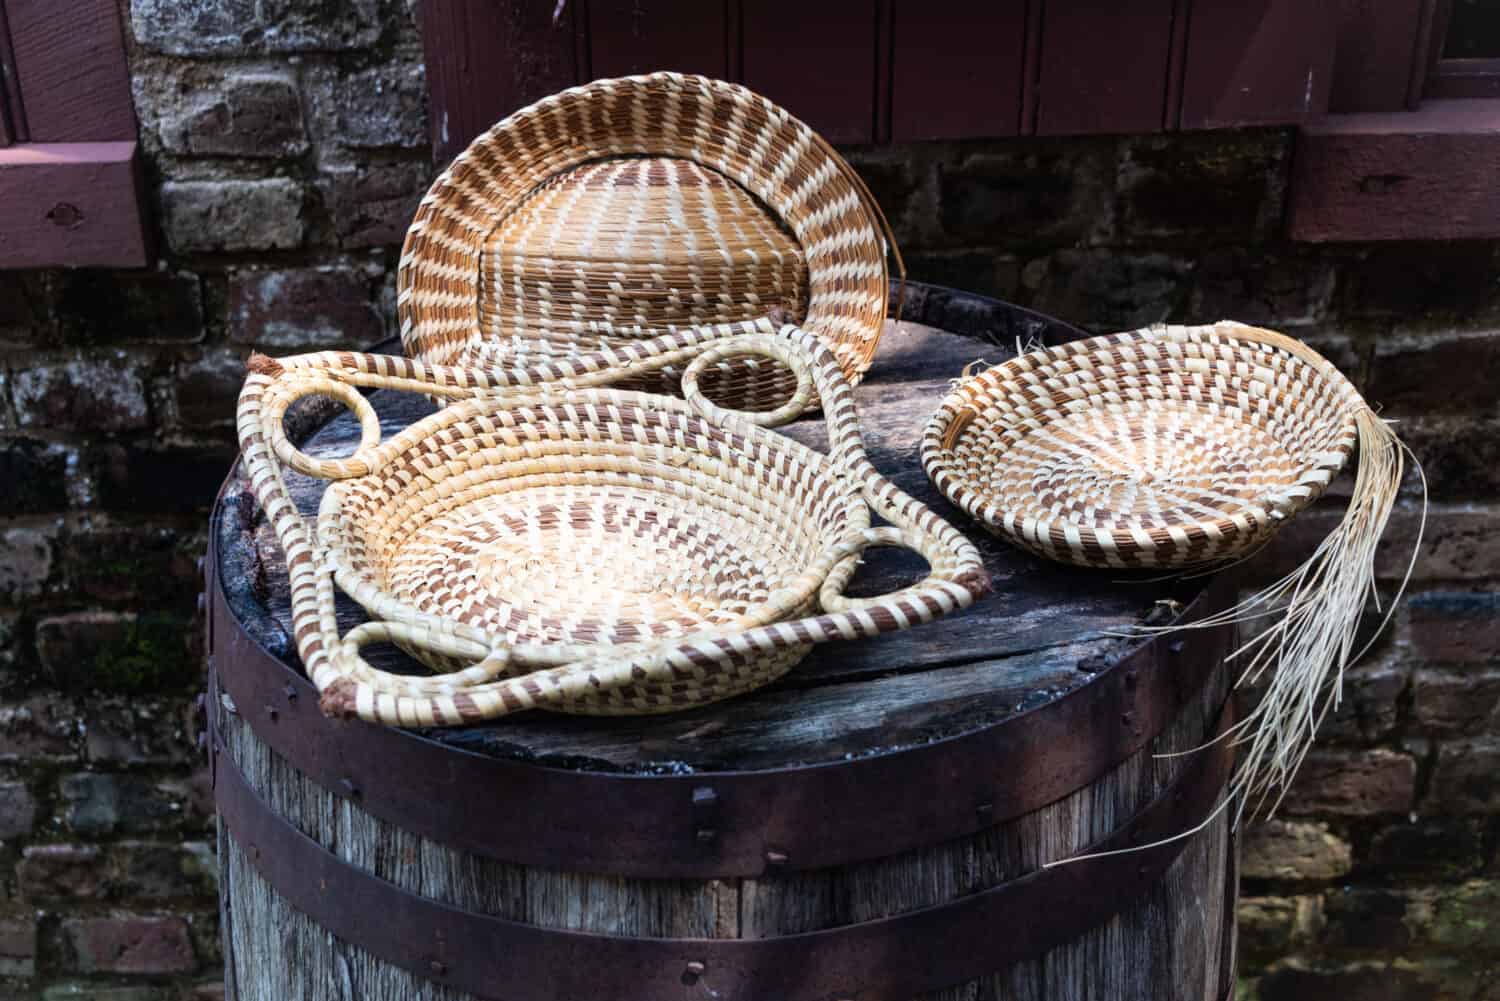 Una foto di cestini di erba dolce fatti a mano realizzati nello stile Gullah-Geechee di Lowcountry, nella Carolina del Sud.